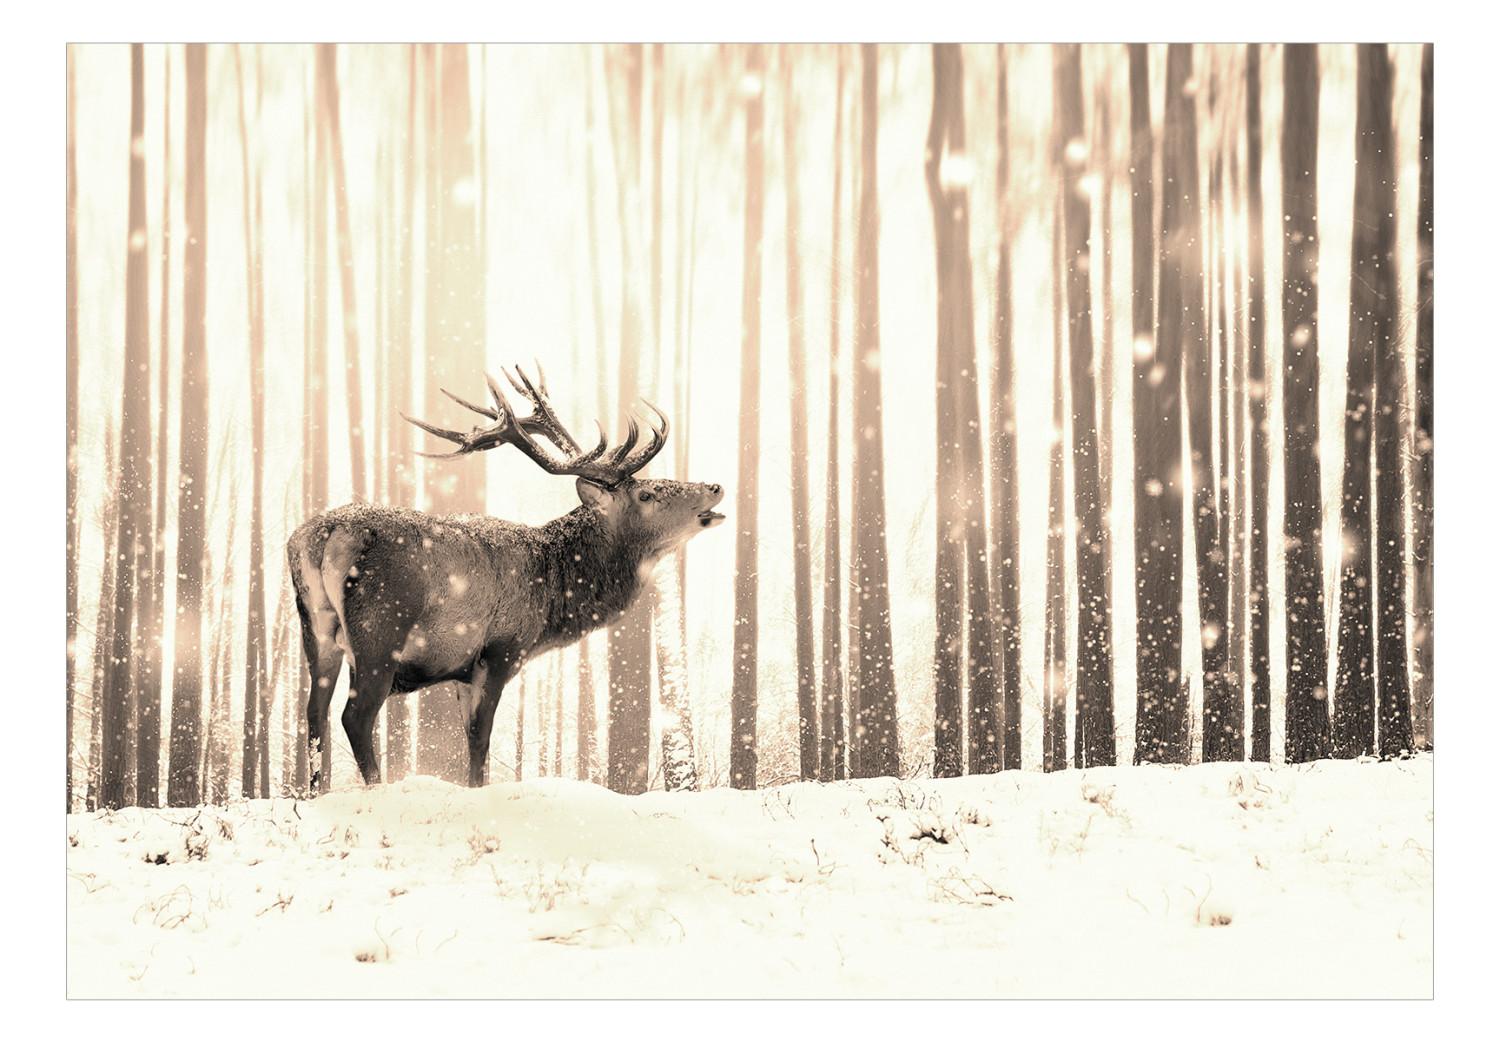 Fotomural a medida Ciervos en el bosque - paisaje forestal de invierno con ciervos sobre fondo de árboles en color sepia